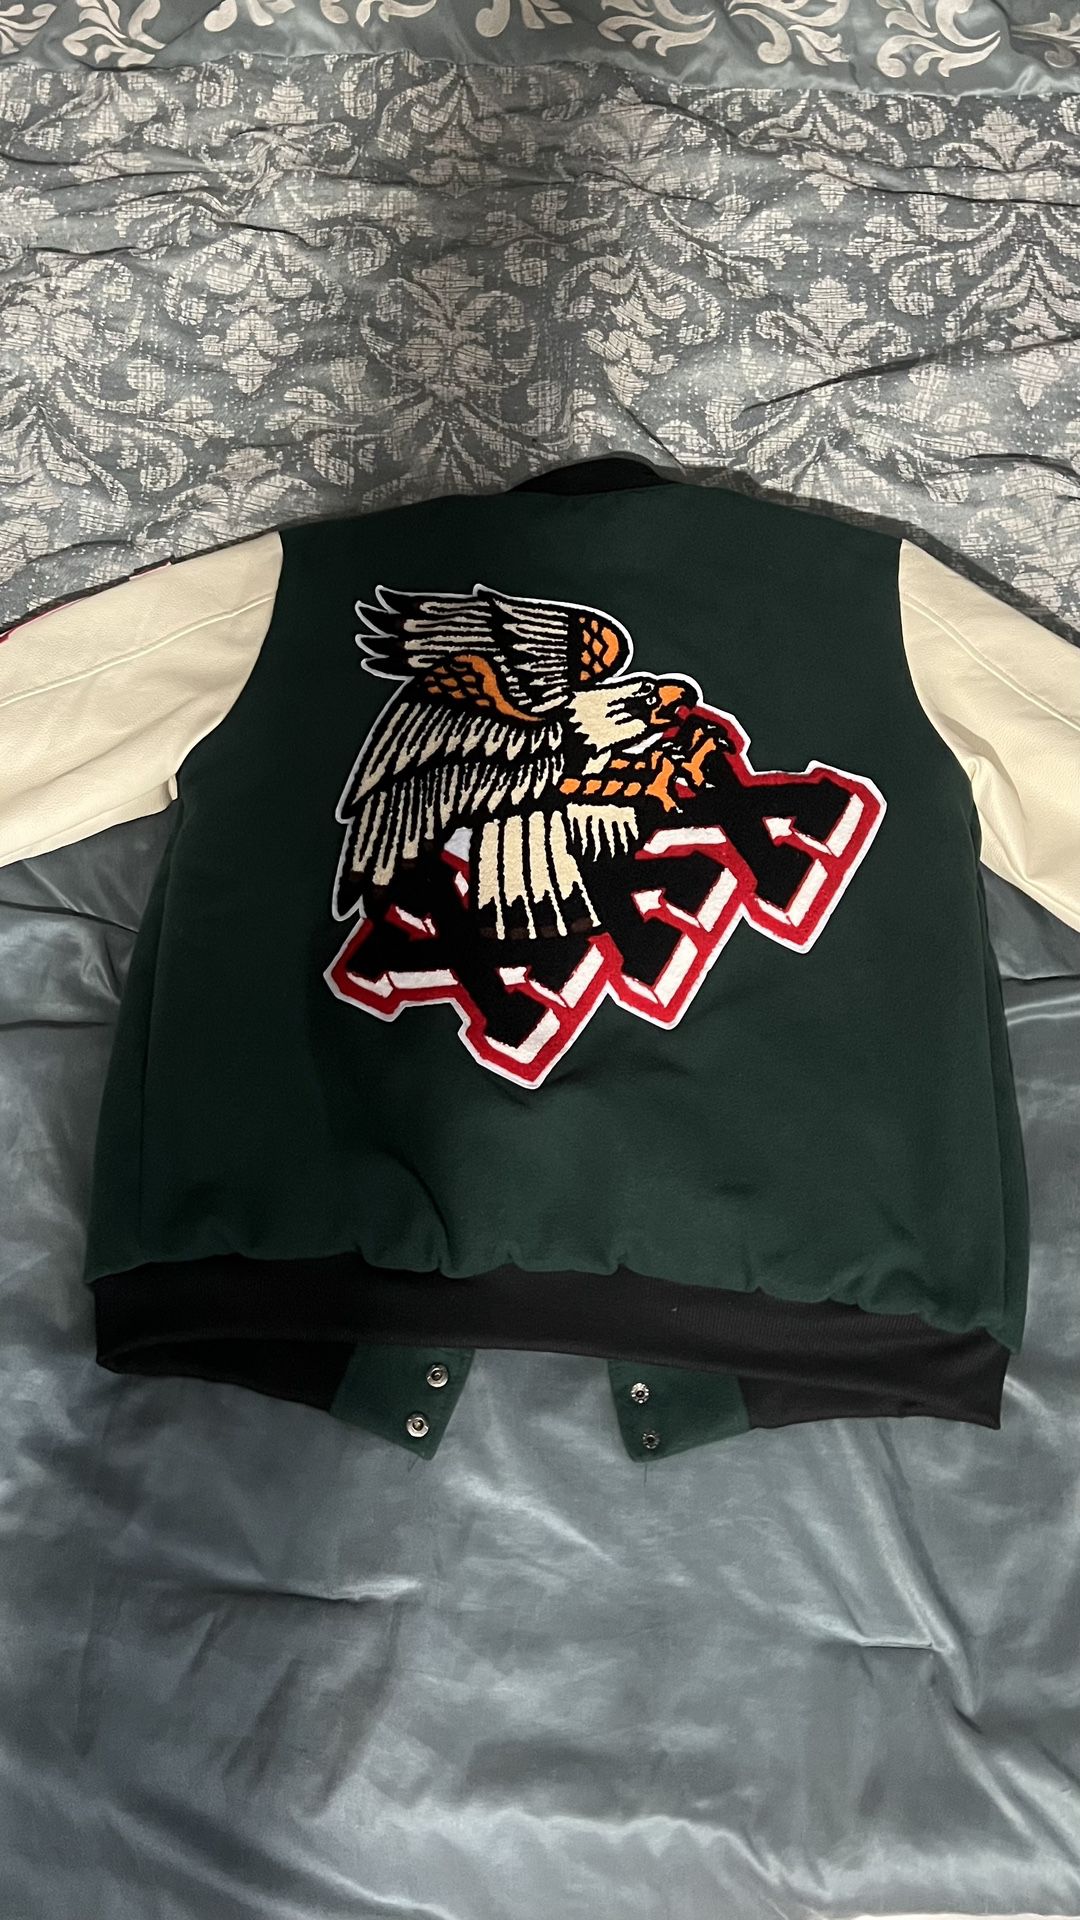 Varsity Jacket (Green) – tons-shop